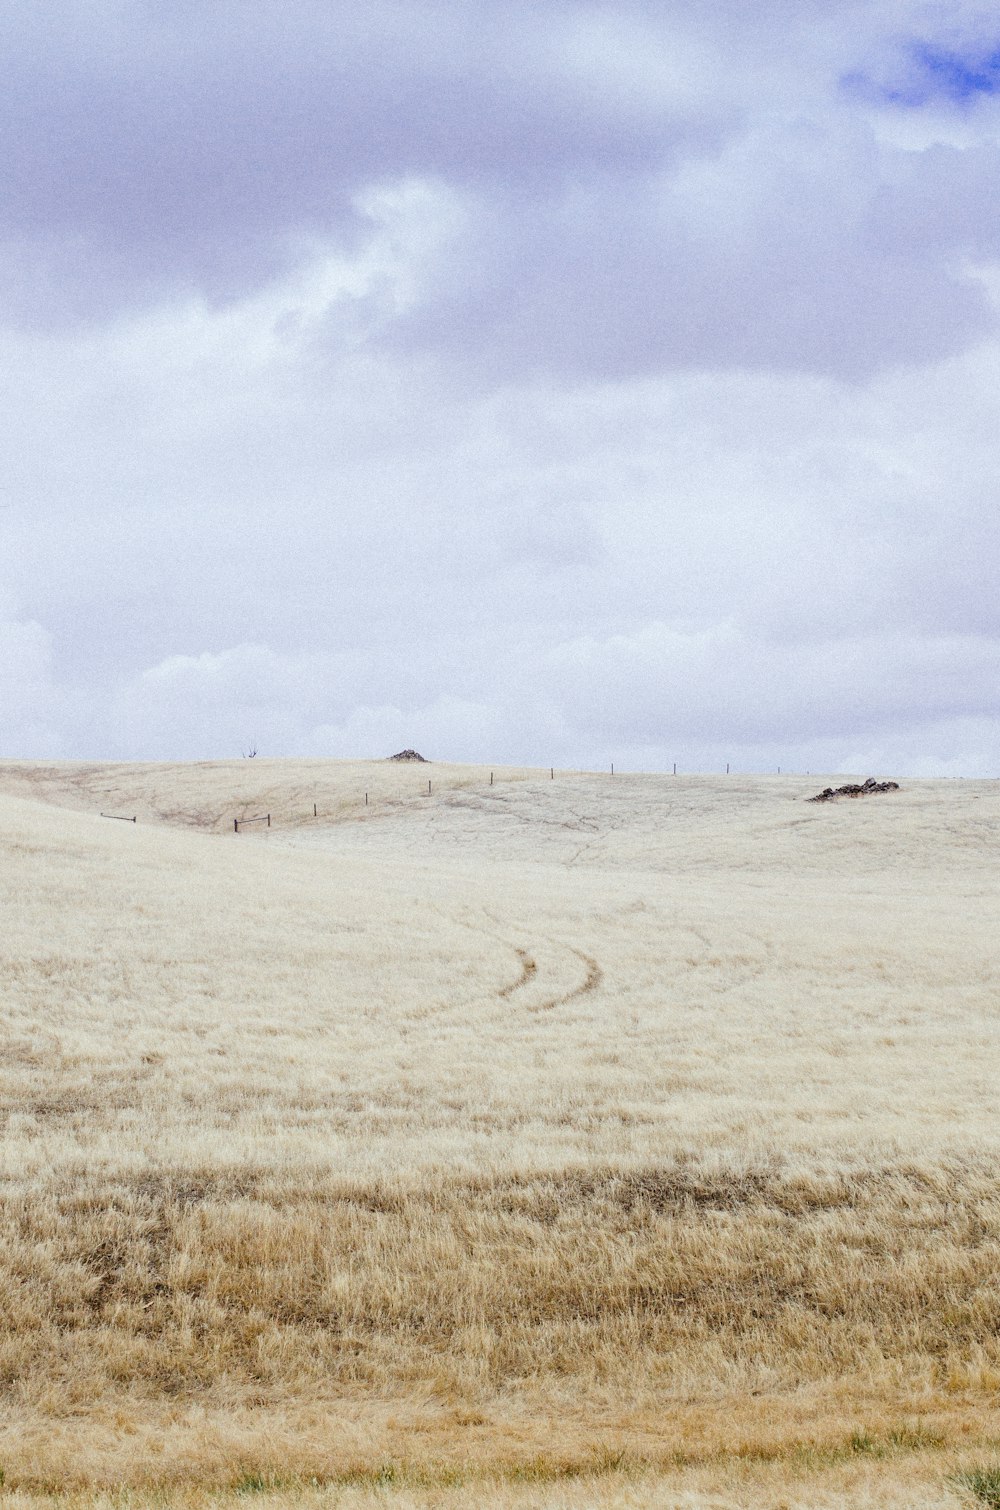 colina de grama marrom sob nuvens brancas durante o dia